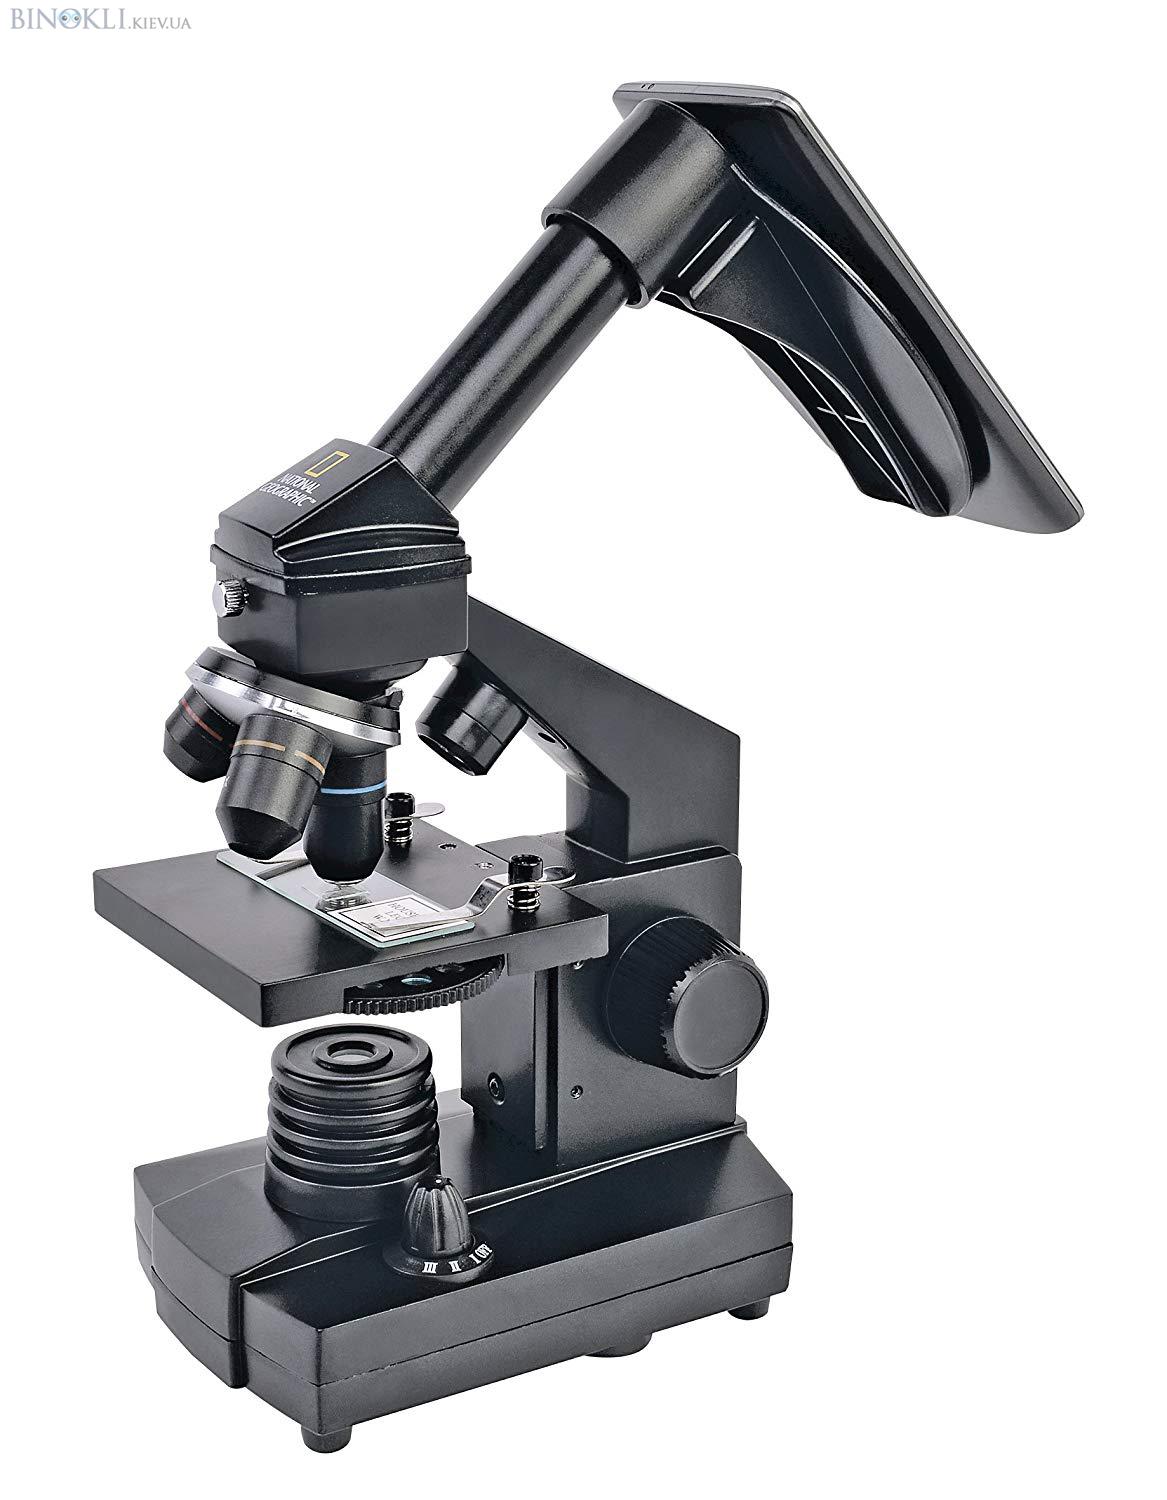 Біологічний мікроскоп National Geographic 40x-1280x (C адаптером для смартфона)